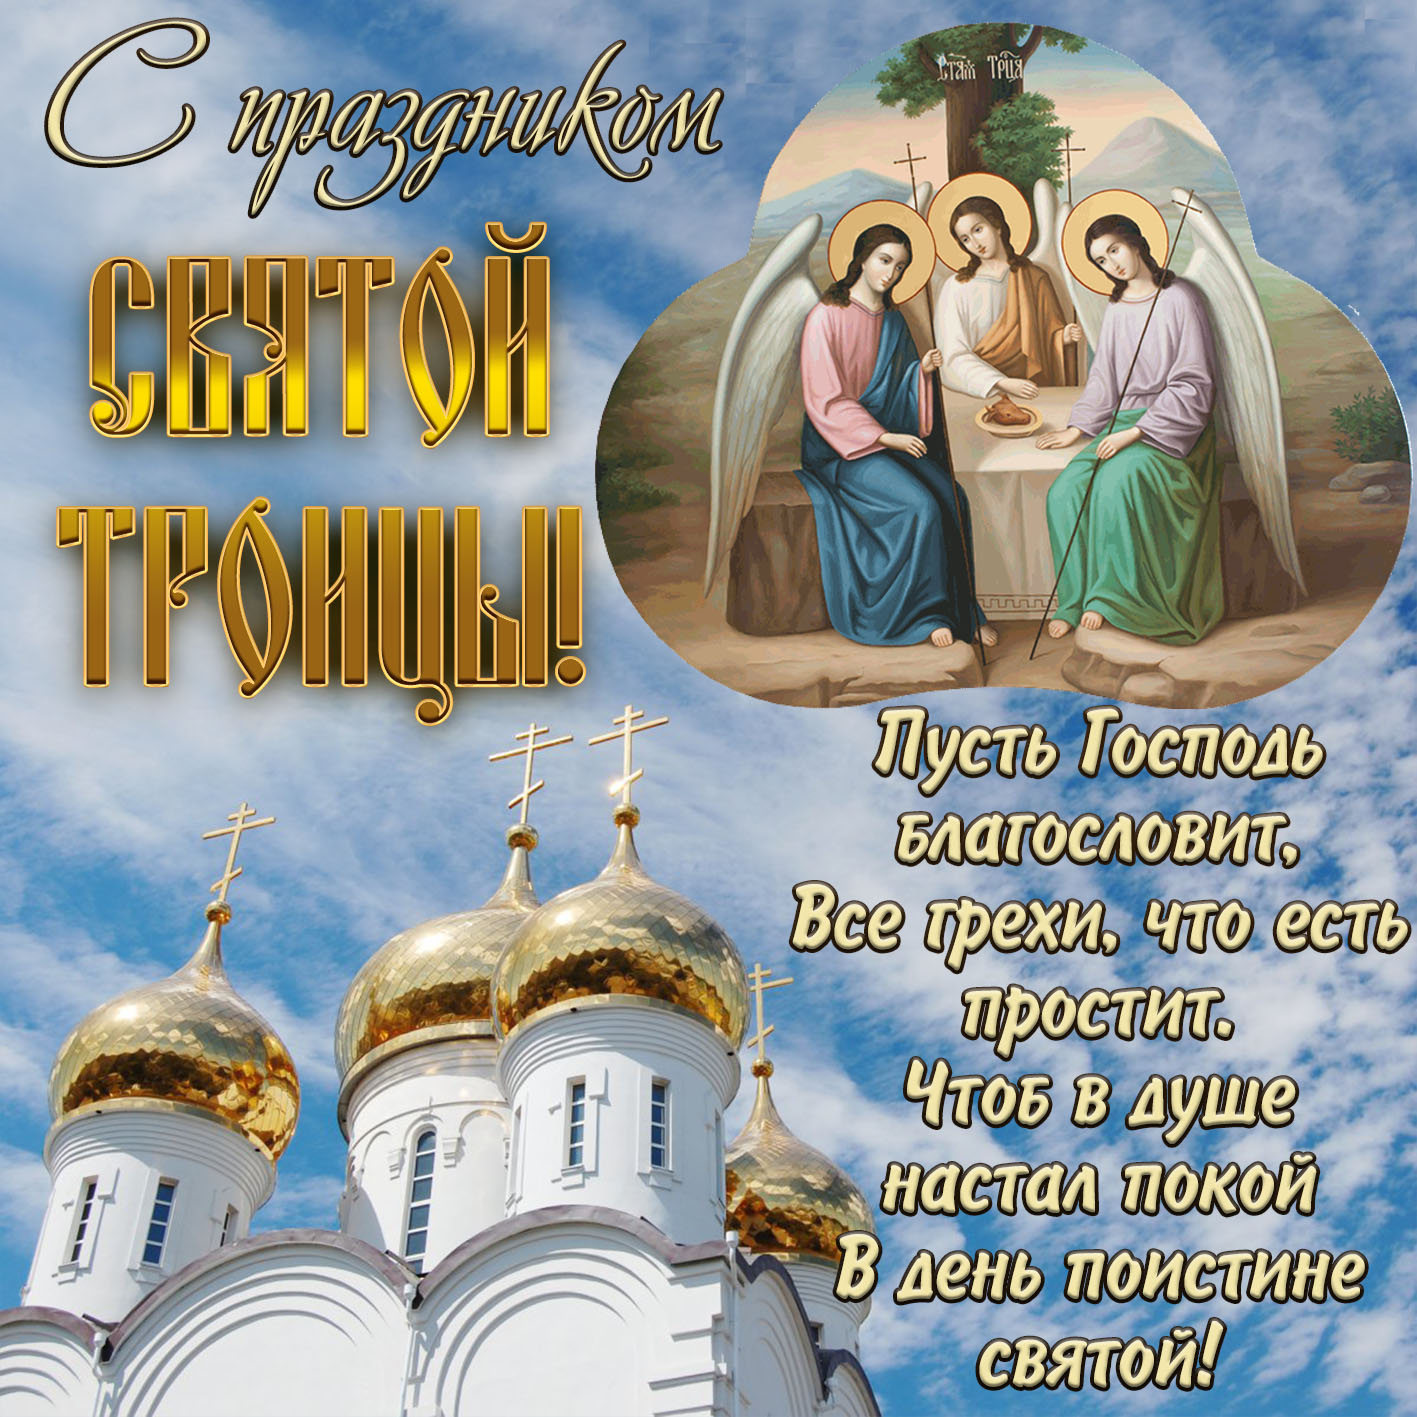 Картинка с храмом на праздник Святой Троицы.